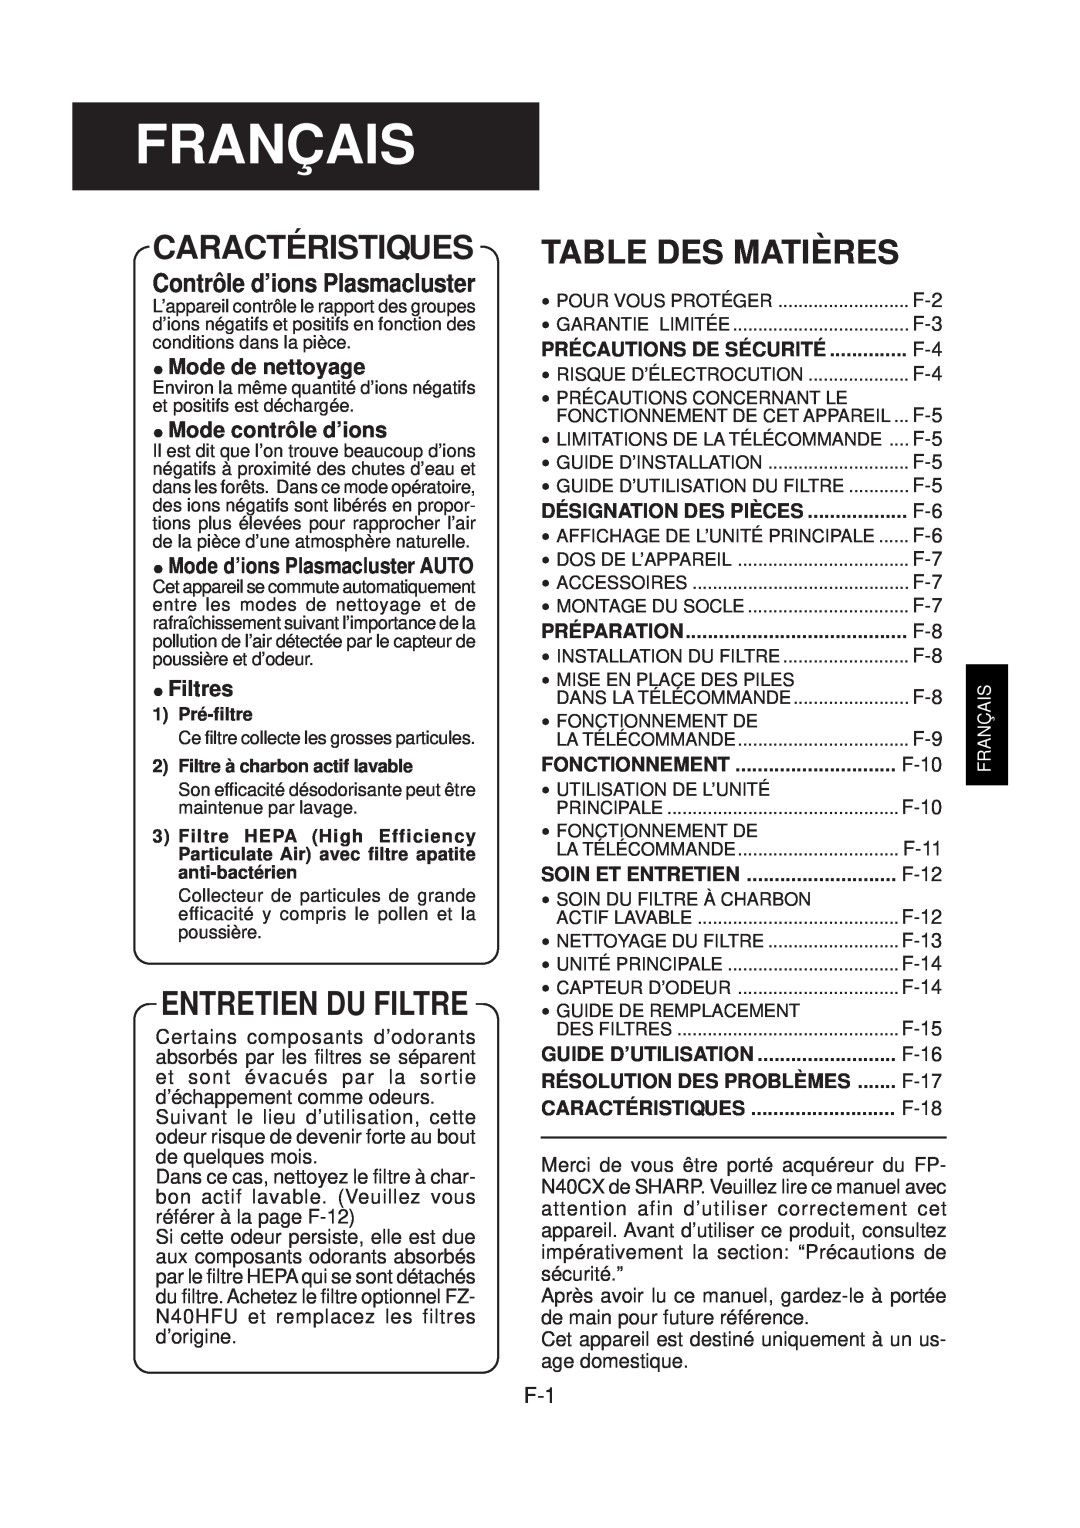 Sharp FP-N40CX Français, Caractéristiques, Entretien Du Filtre, Table Des Matières, Contrôle d’ions Plasmacluster 